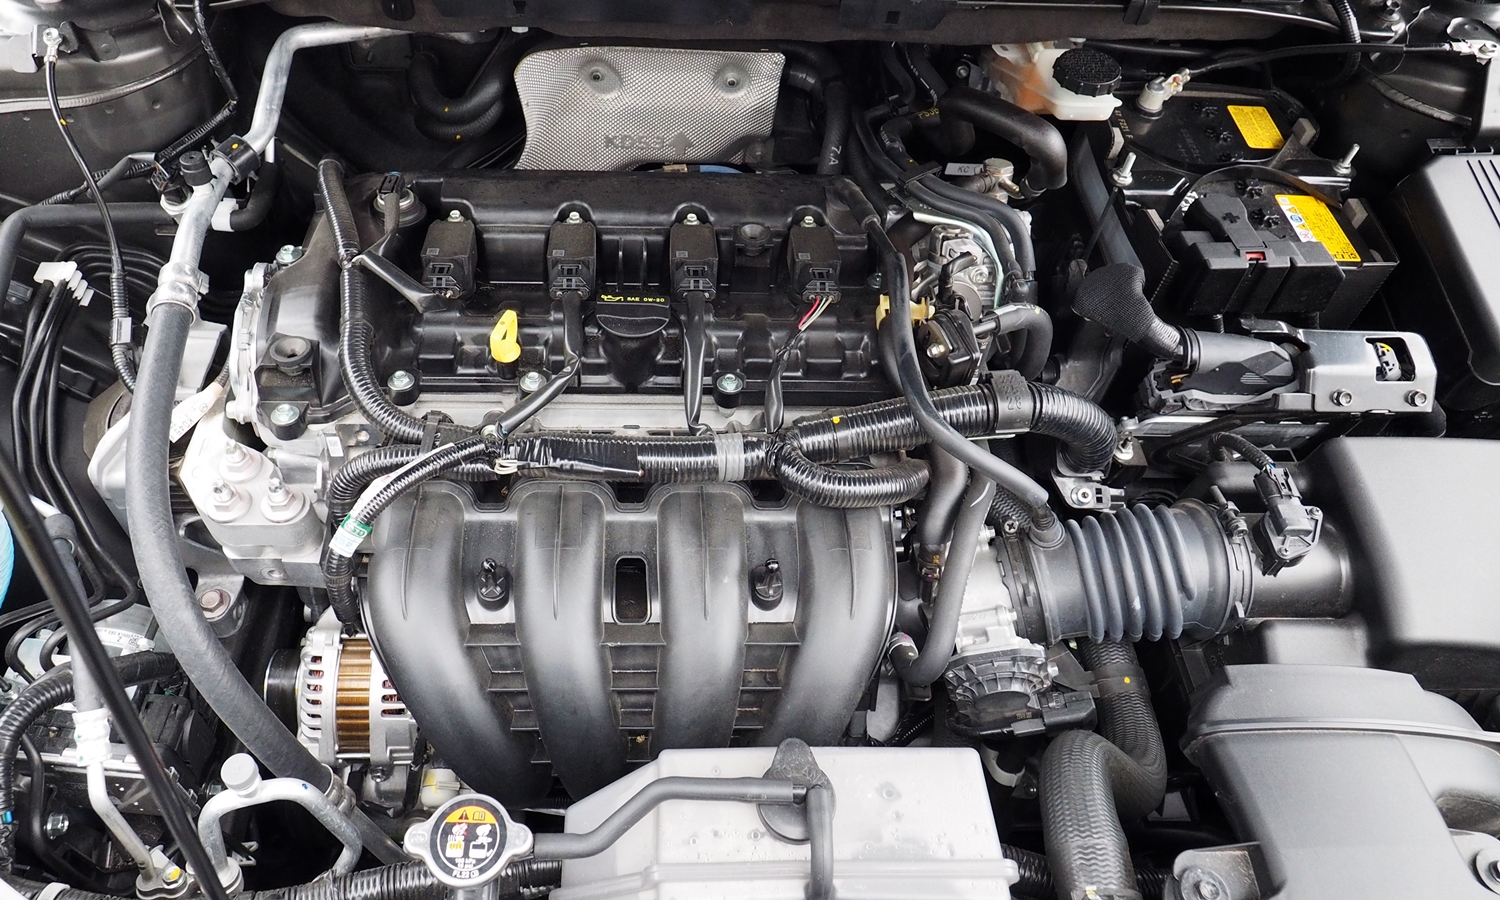 Mazda CX-5 Photos: 2017 Mazda CX-5 engine uncovered